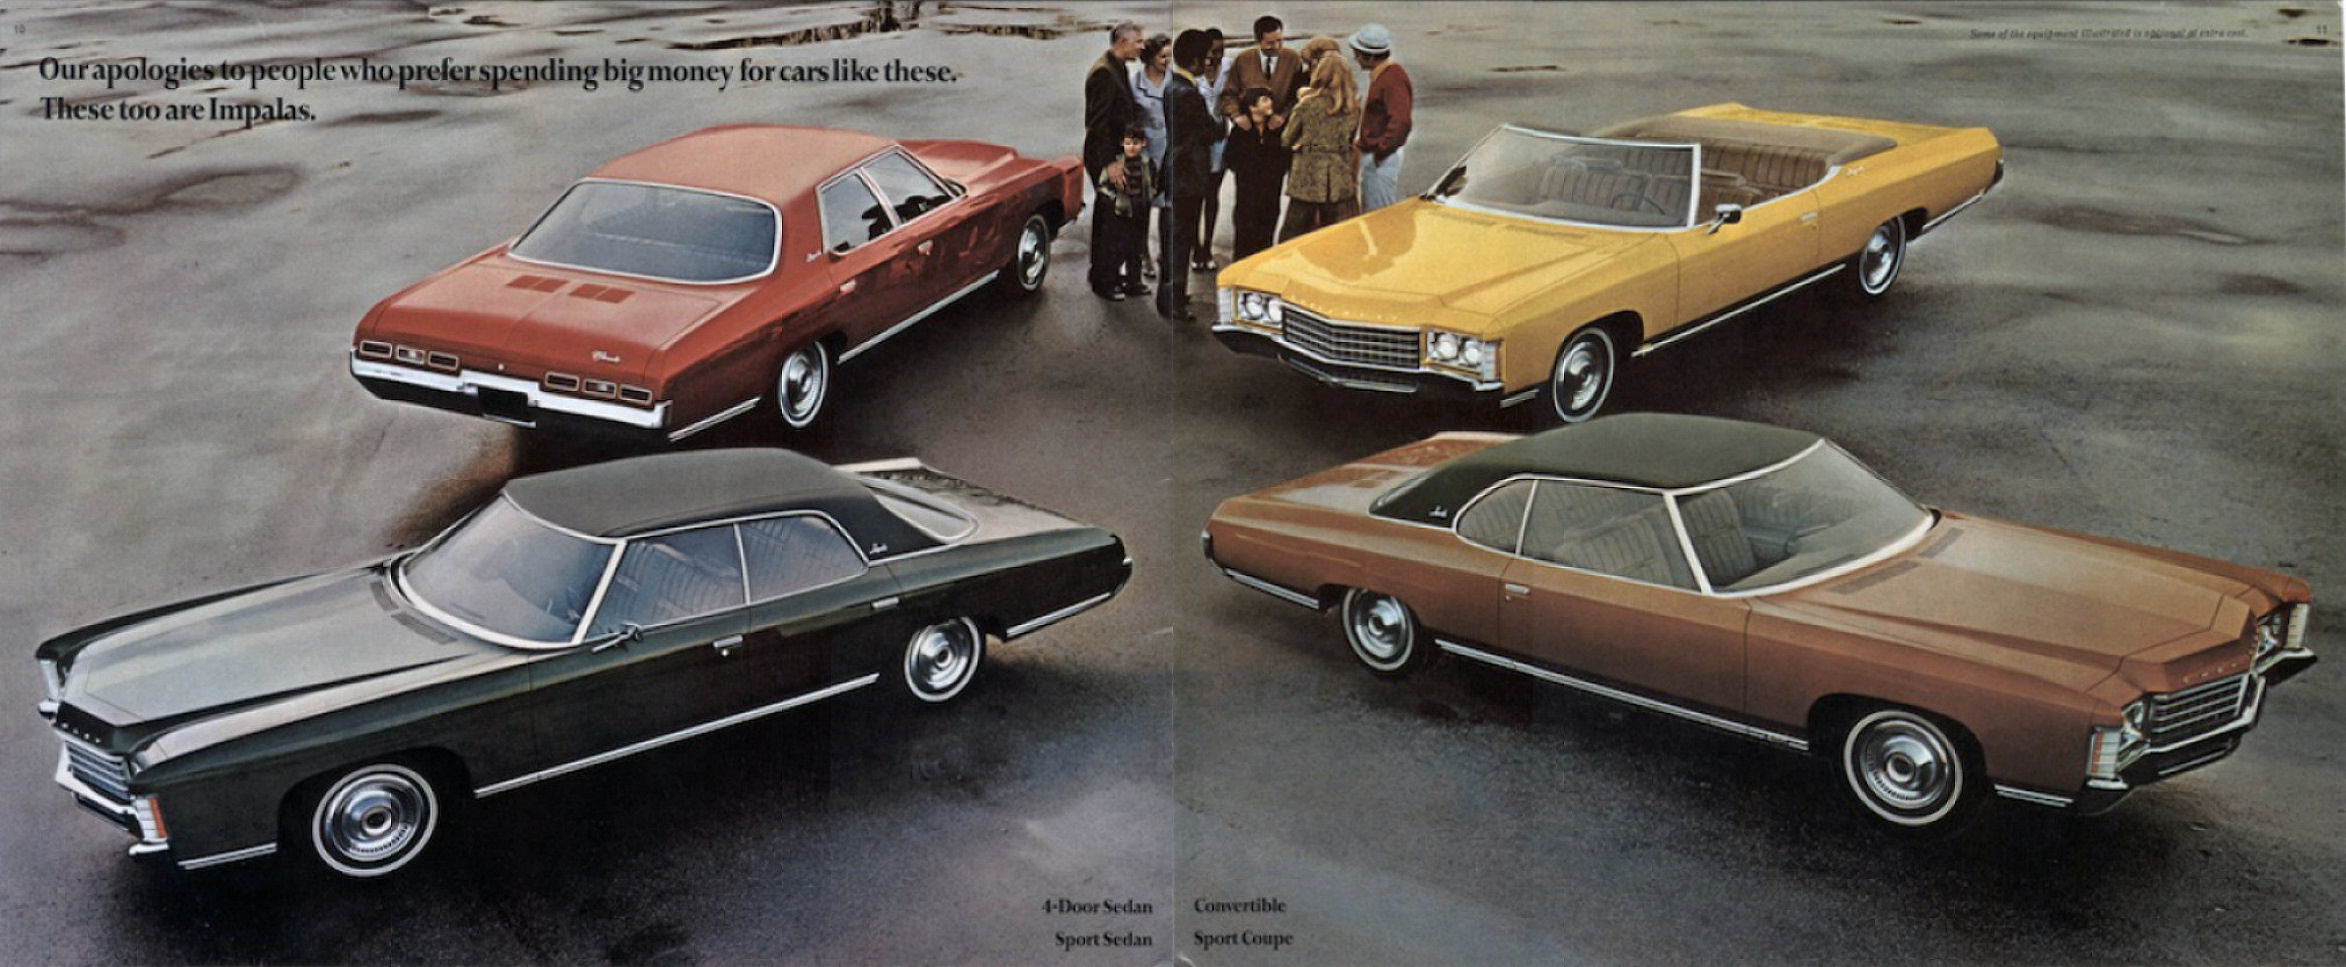 1971_Chevrolet_Full_Size_Cdn-10-11